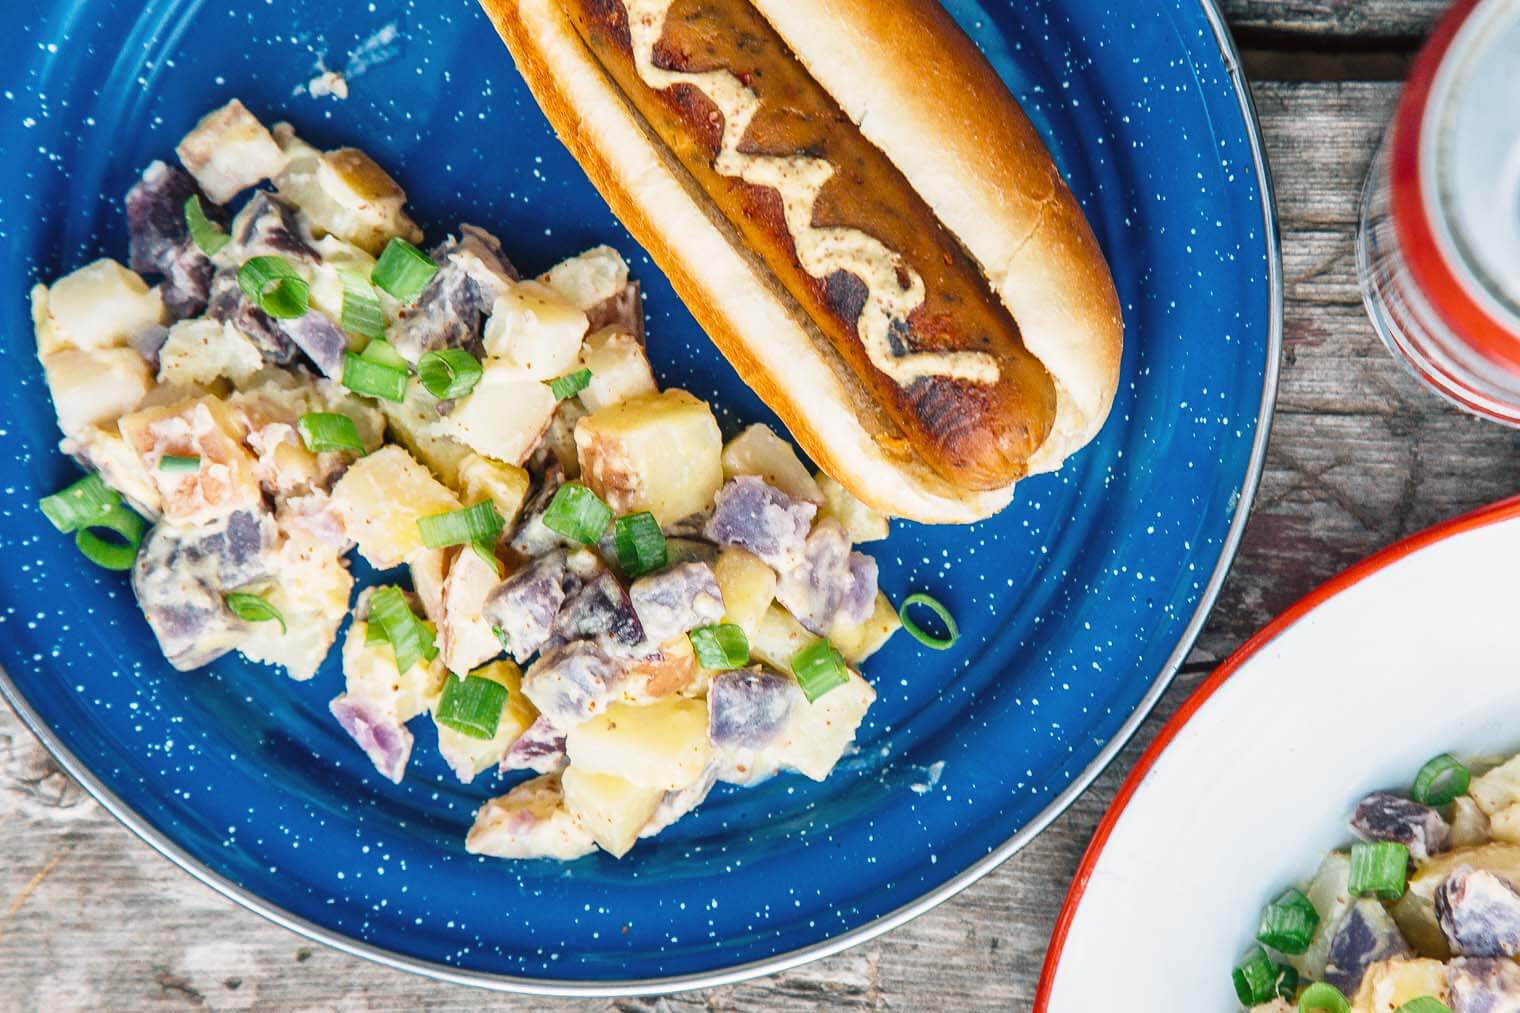 Potato salad and a hotdog on a blue plate